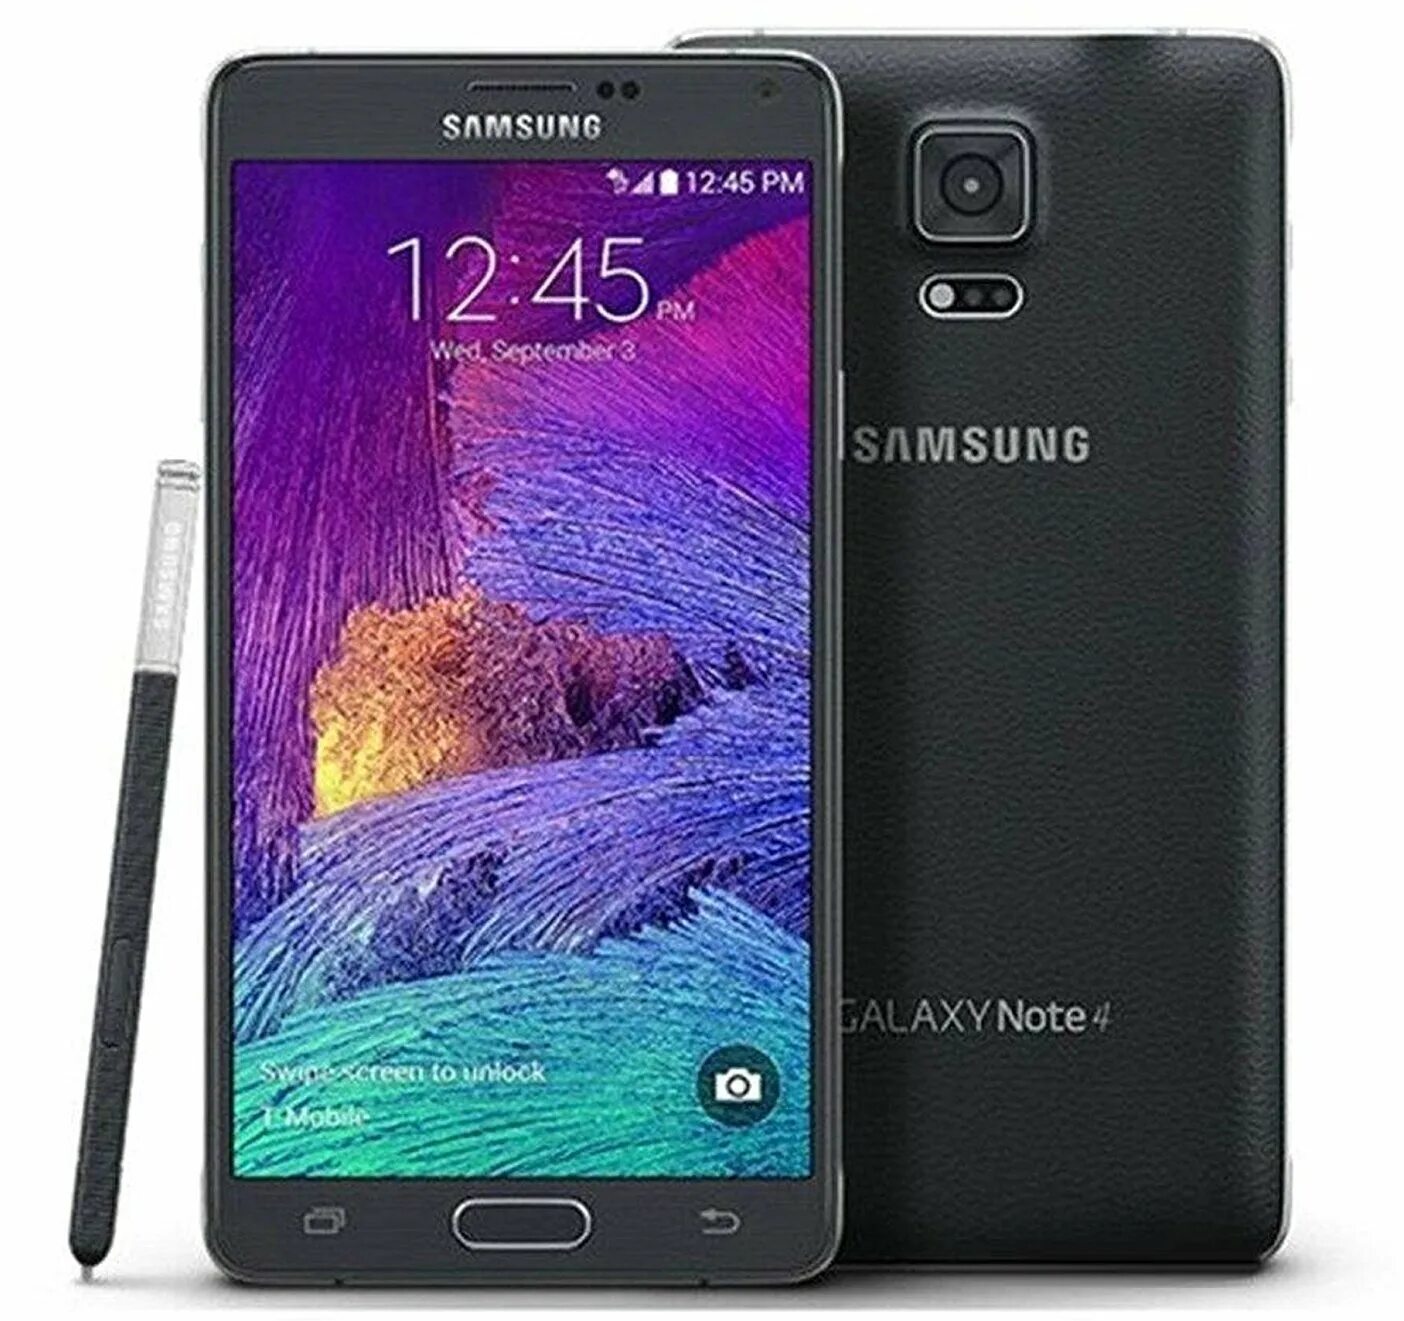 Samsung note 4g. Galaxy Note 4. Samsung Galaxy Note s4. Самсунг ноут 4. Samsung Galaxy Note 4 (910f, 910p, 910t).